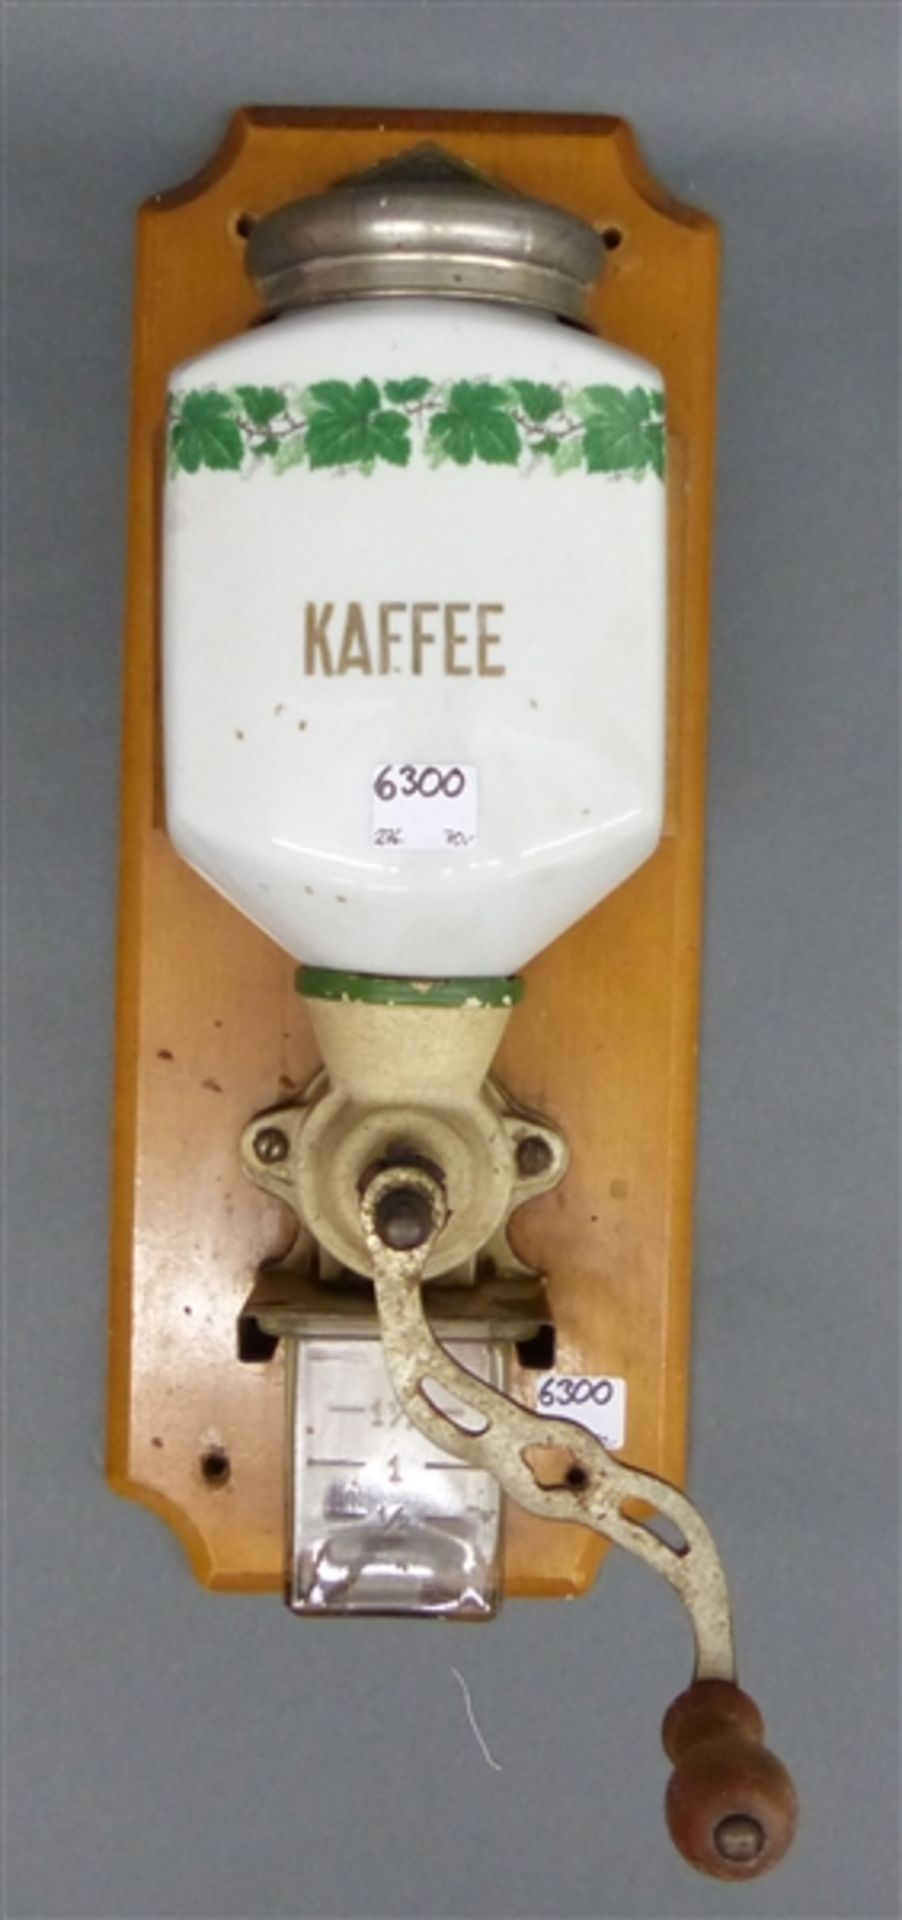 Wandkaffeemühle, 19. Jh. Porzellan, Eisen, mit Glasbehälter, auf Holzbrett, h. (ohne Brett) 33 cm,